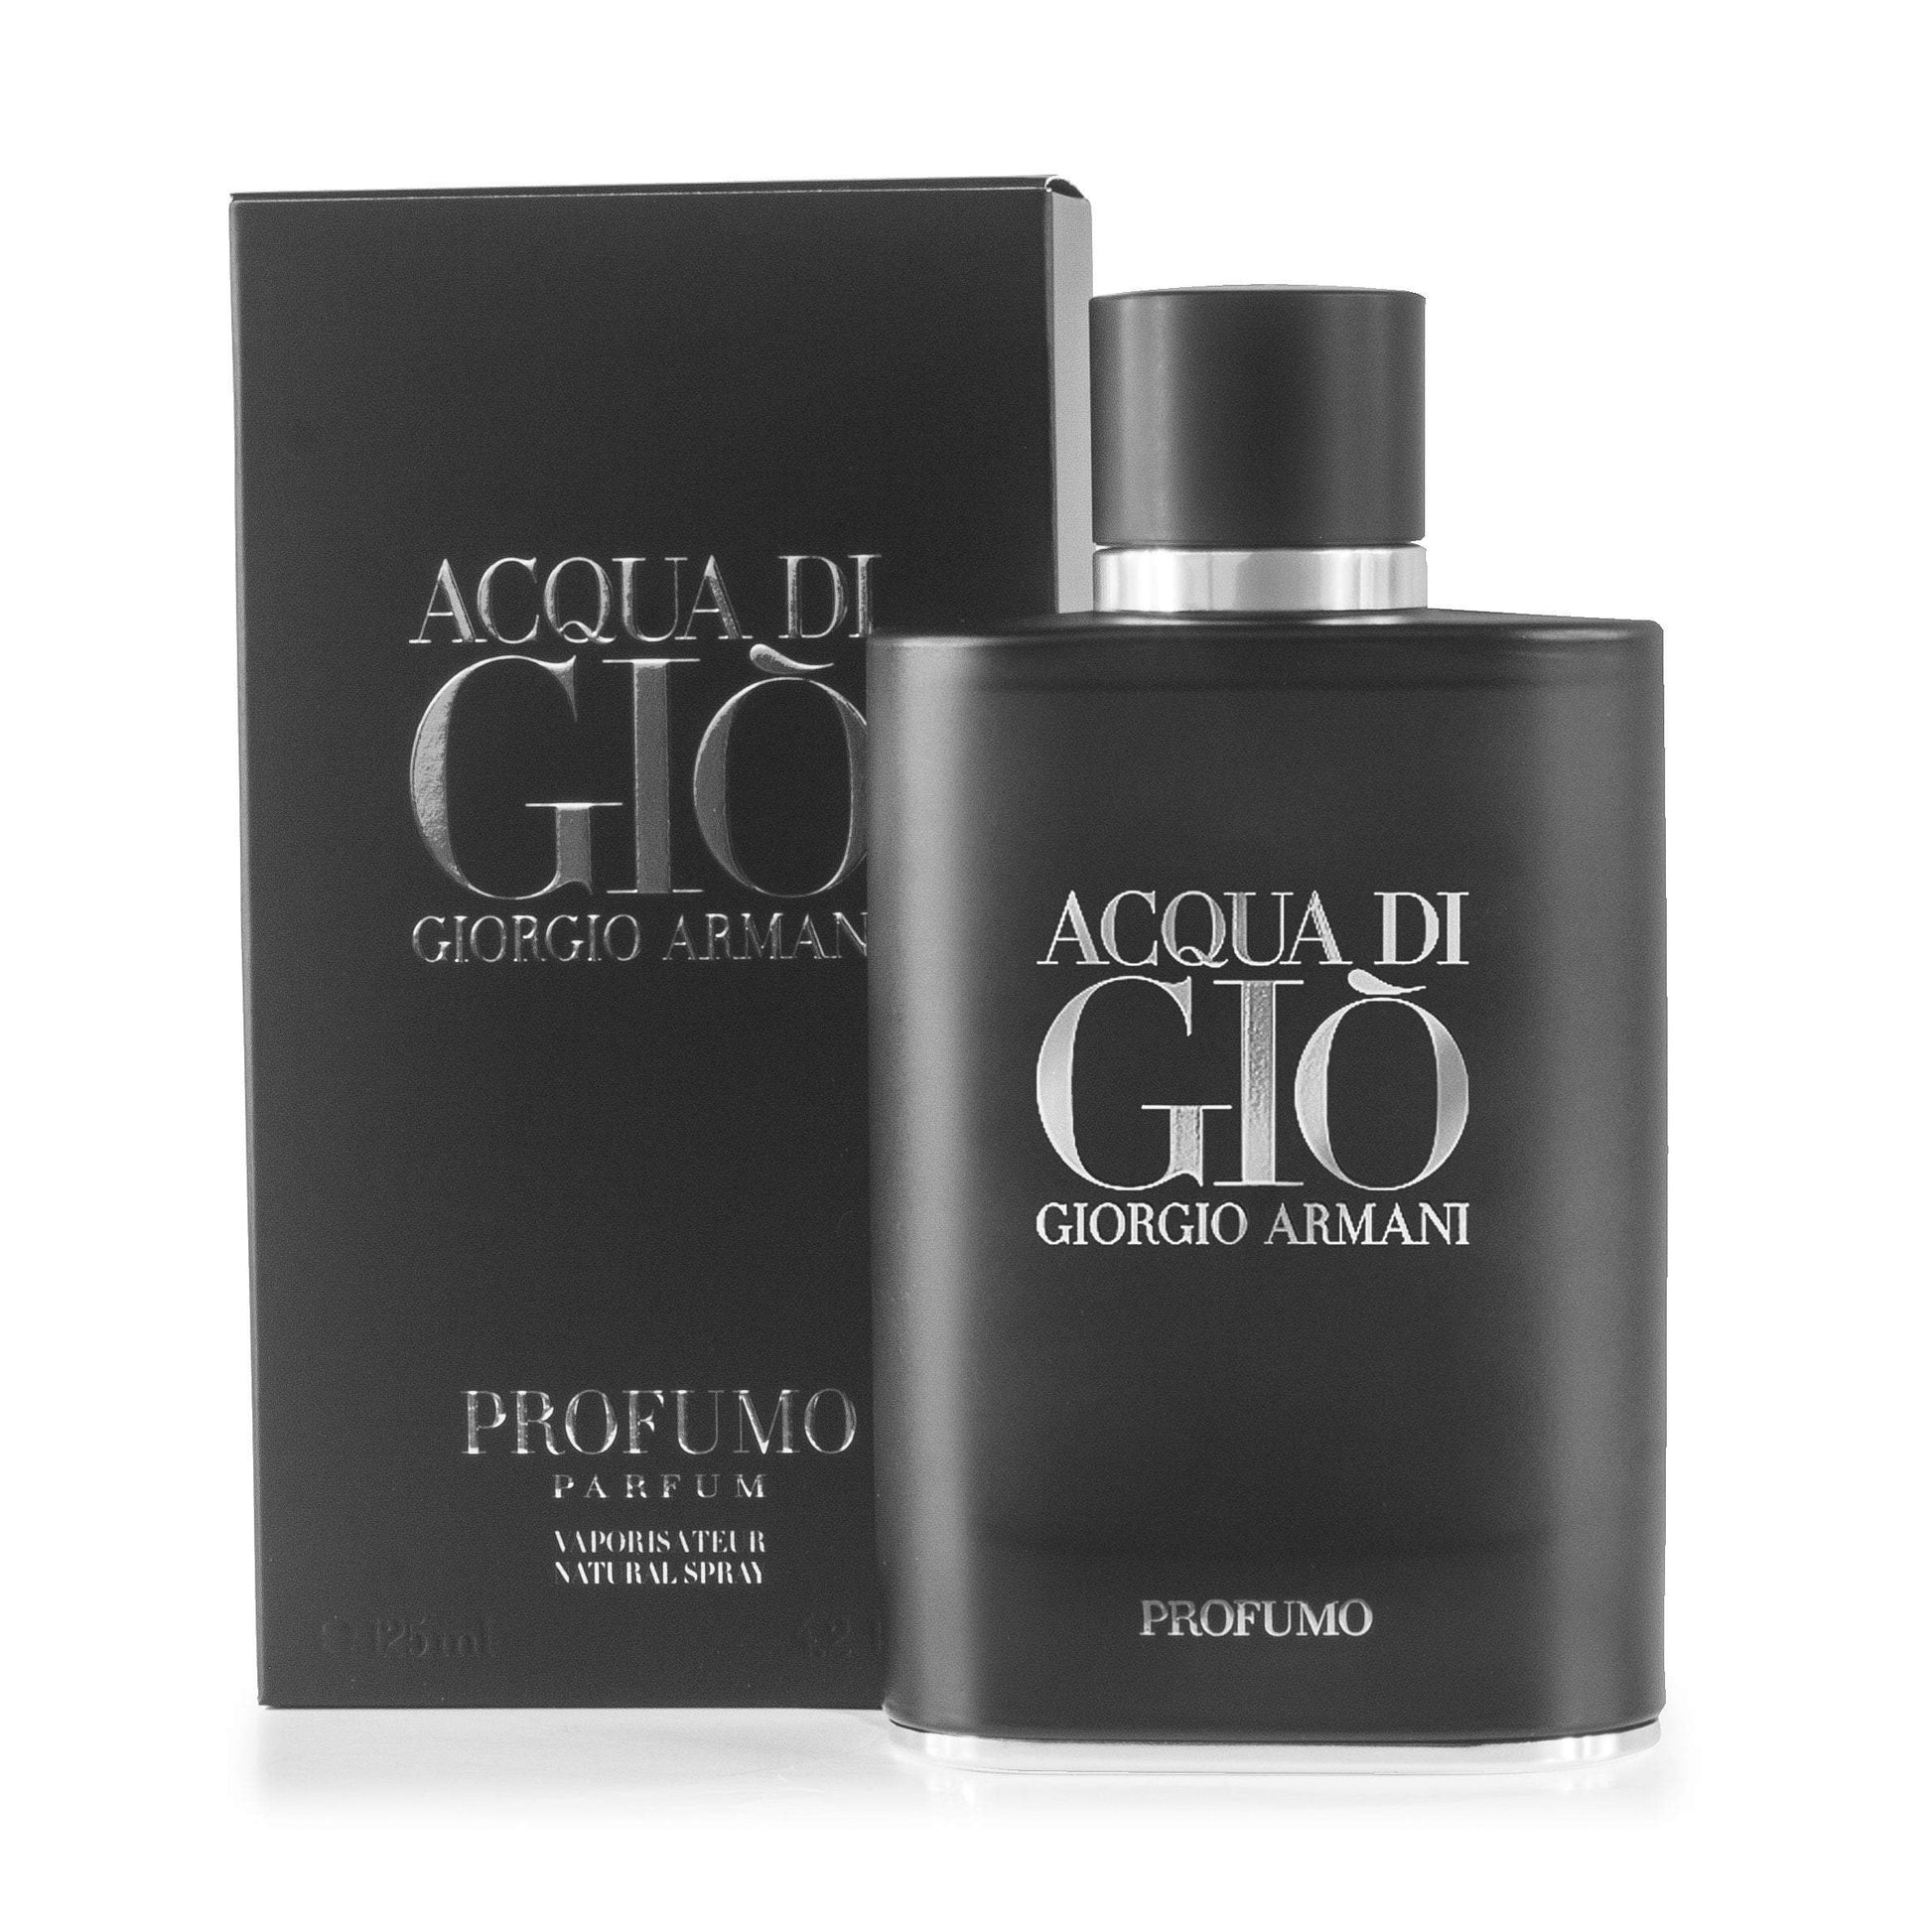 Acqua Di Gio Profumo Parfum Spray for Men by Giorgio Armani, Product image 2